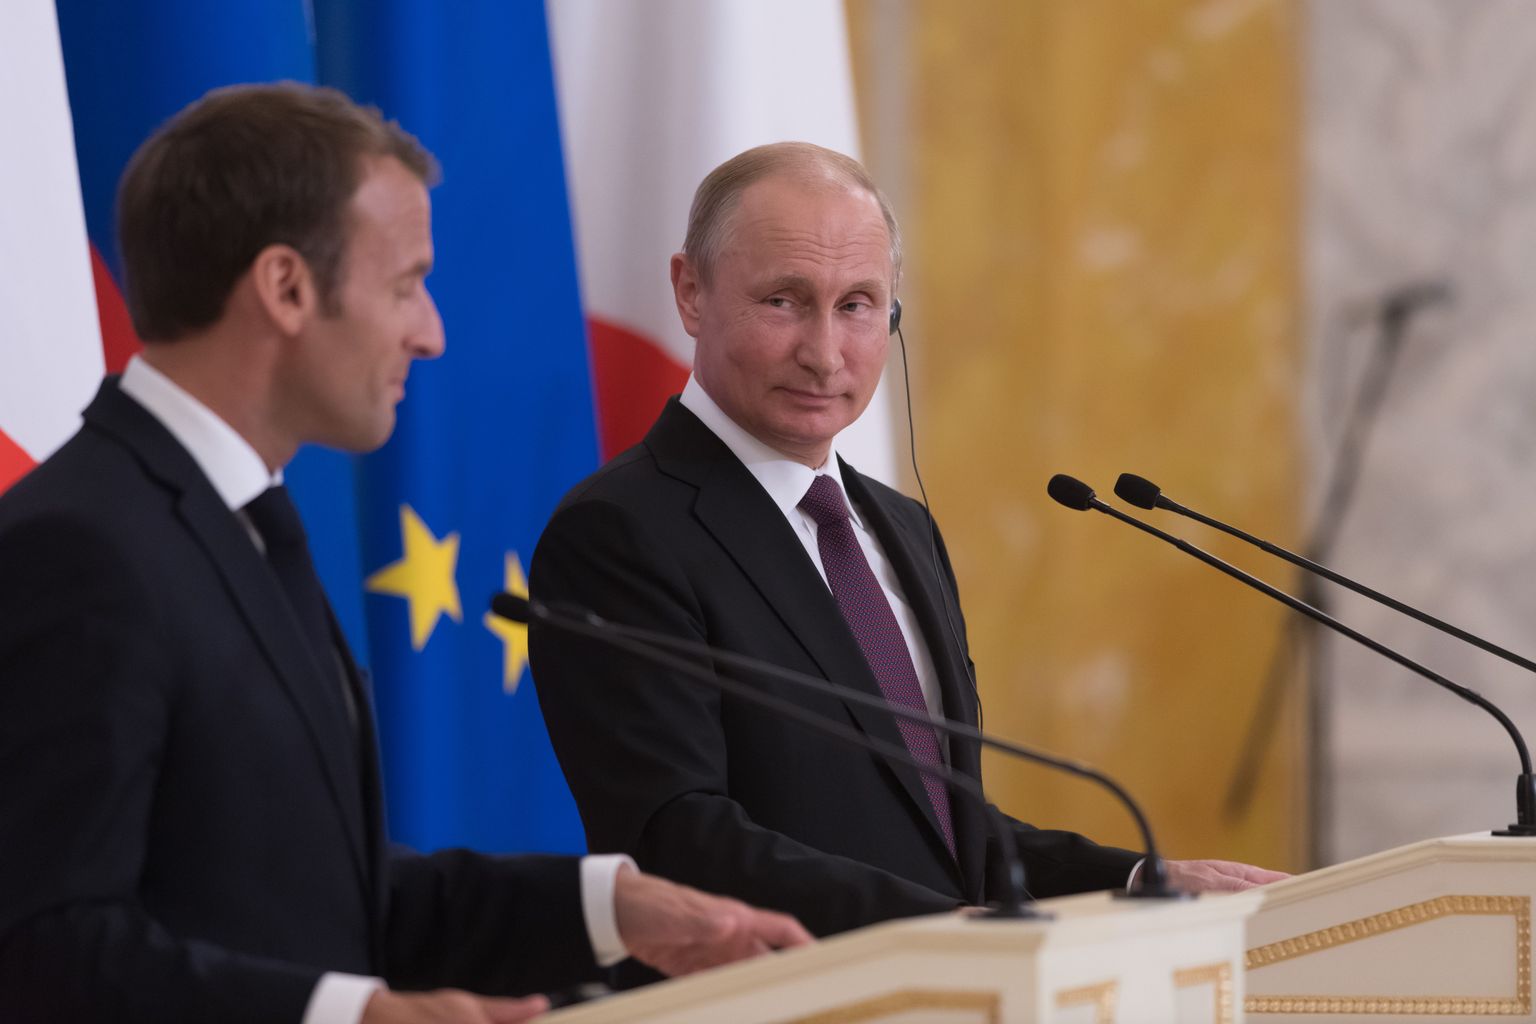 Emmanuel Macron ja Vladimir Putin pressikonverentsil.